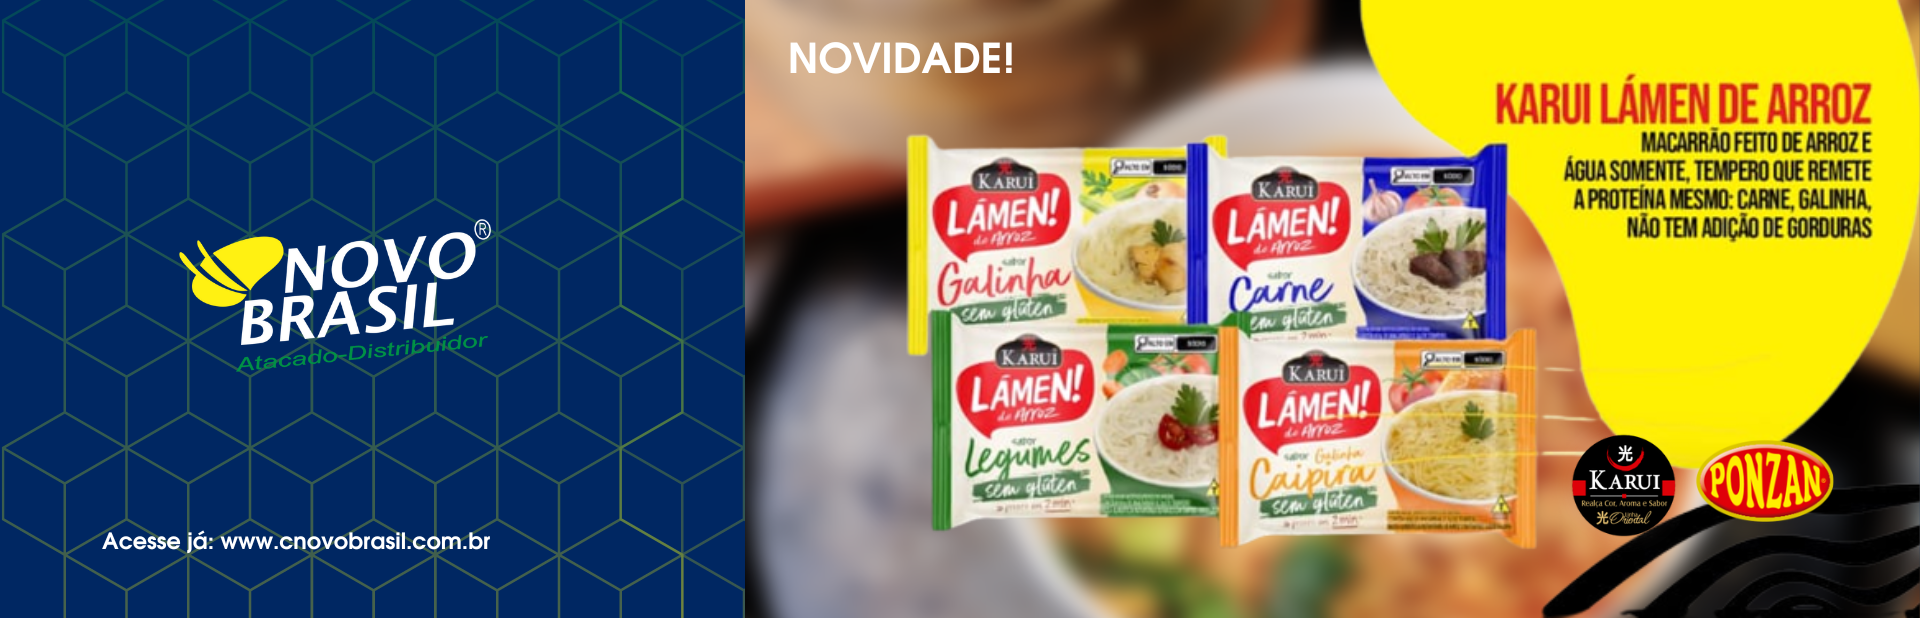 Banner | Novo Brasil Distribuidora | Atacado | Distribuidor | Alagoas